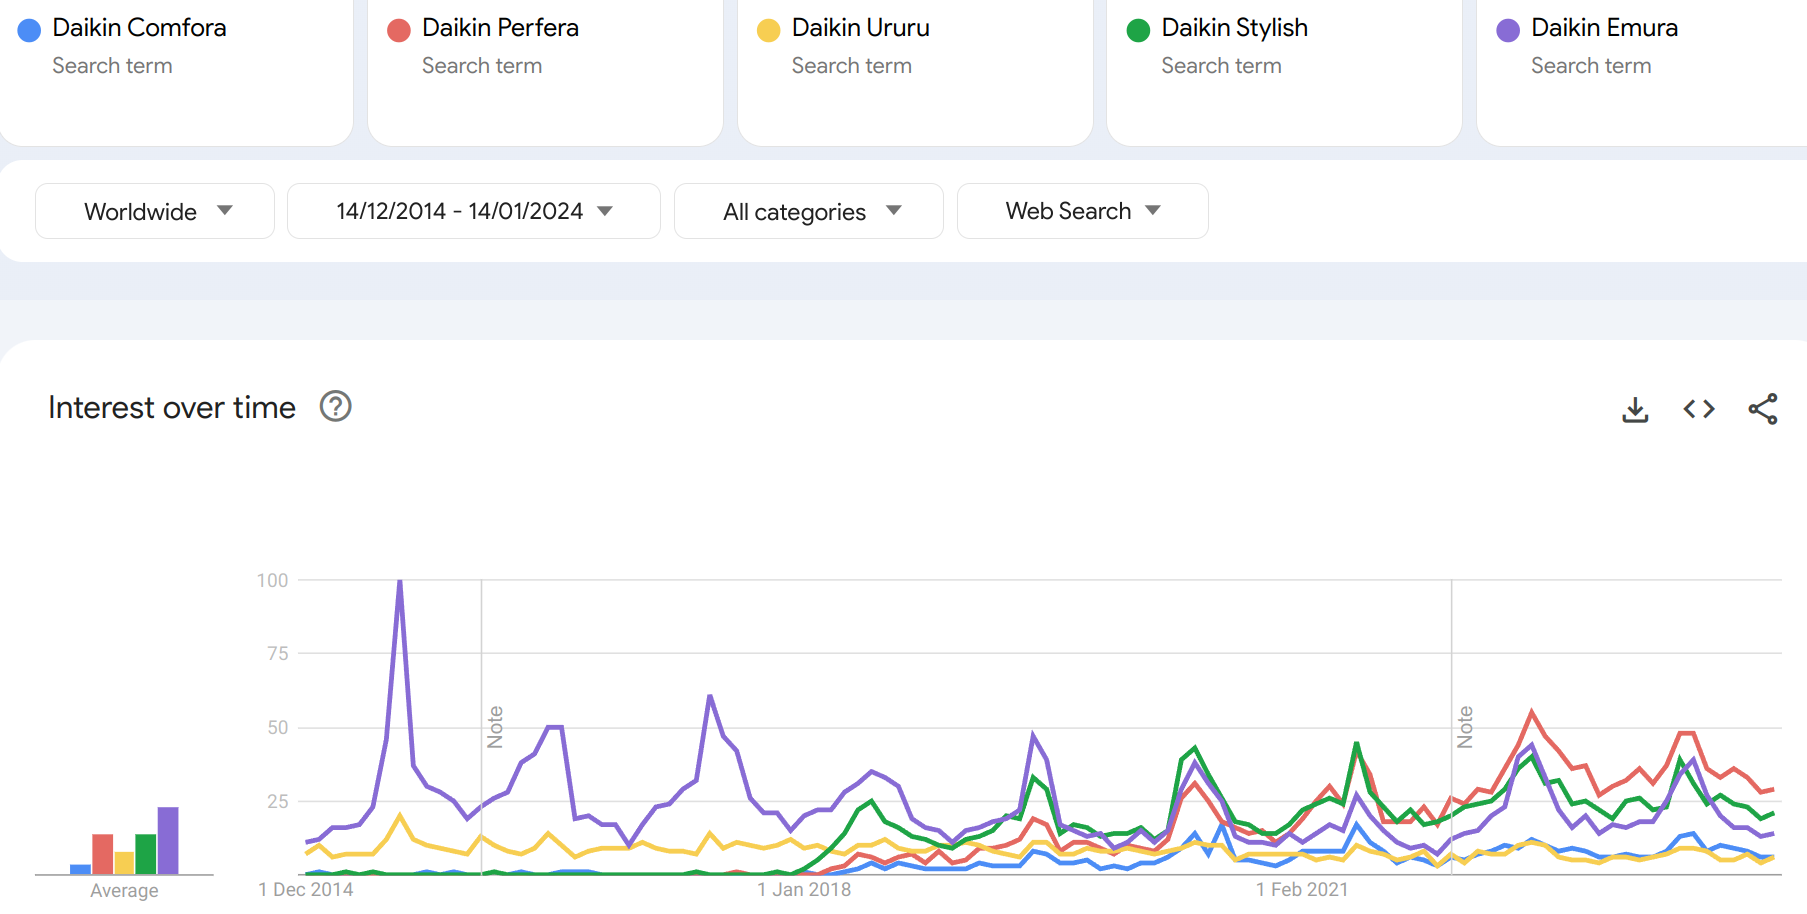 Suchaktivität in Google Trends bzgl. der Daikin Modellreihen